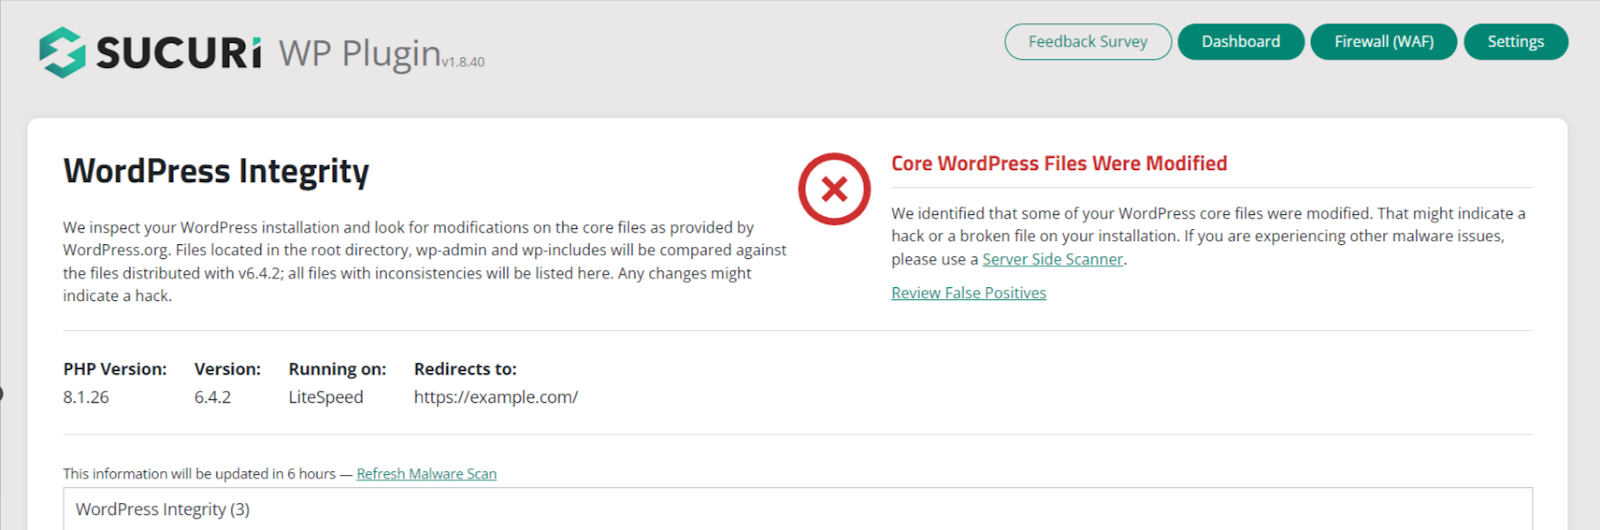 installa il plugin Sucuri per proteggere un sito WordPress